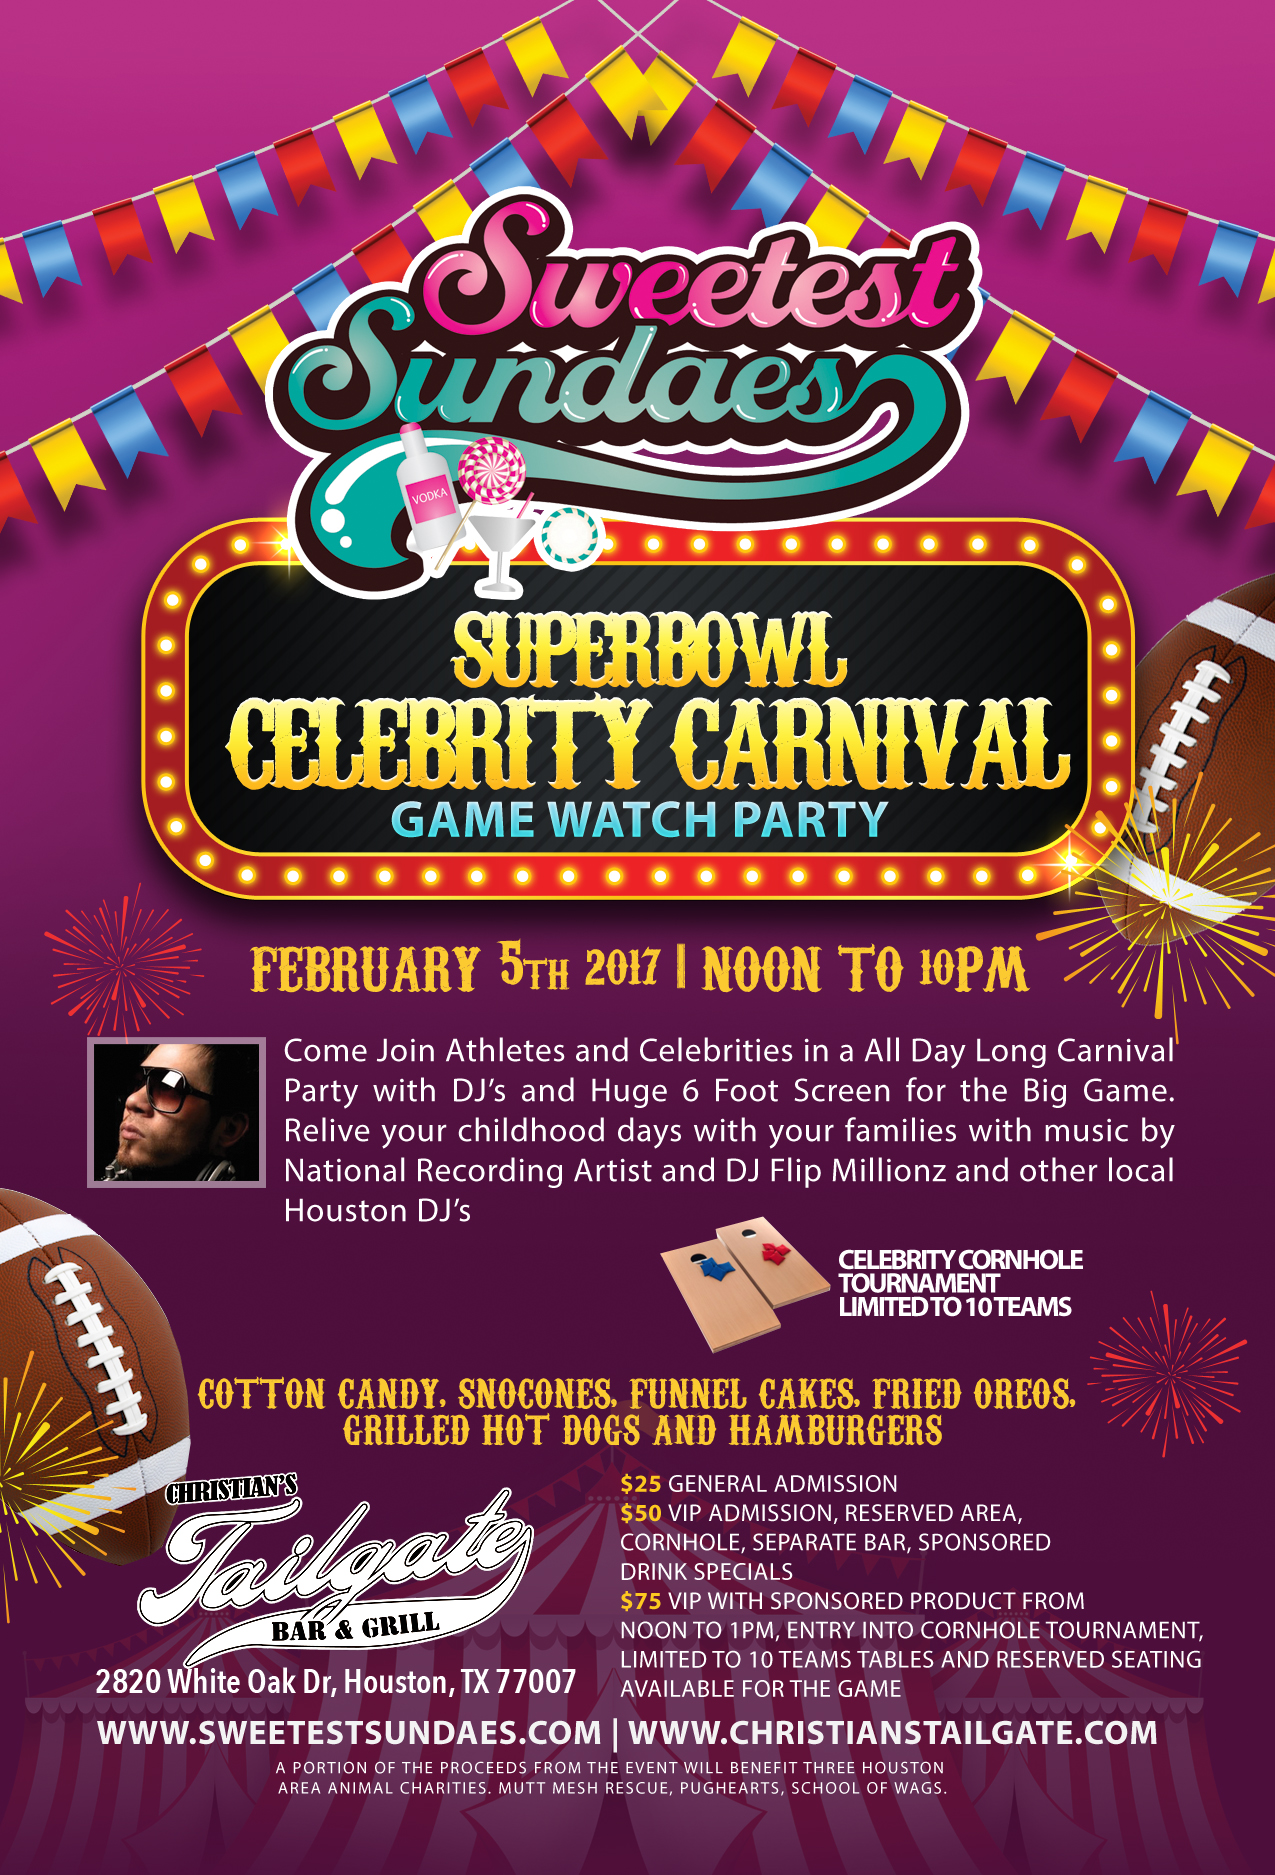 Sweetest Sundaes Super Bowl Celebrity Carnival Houston 2017